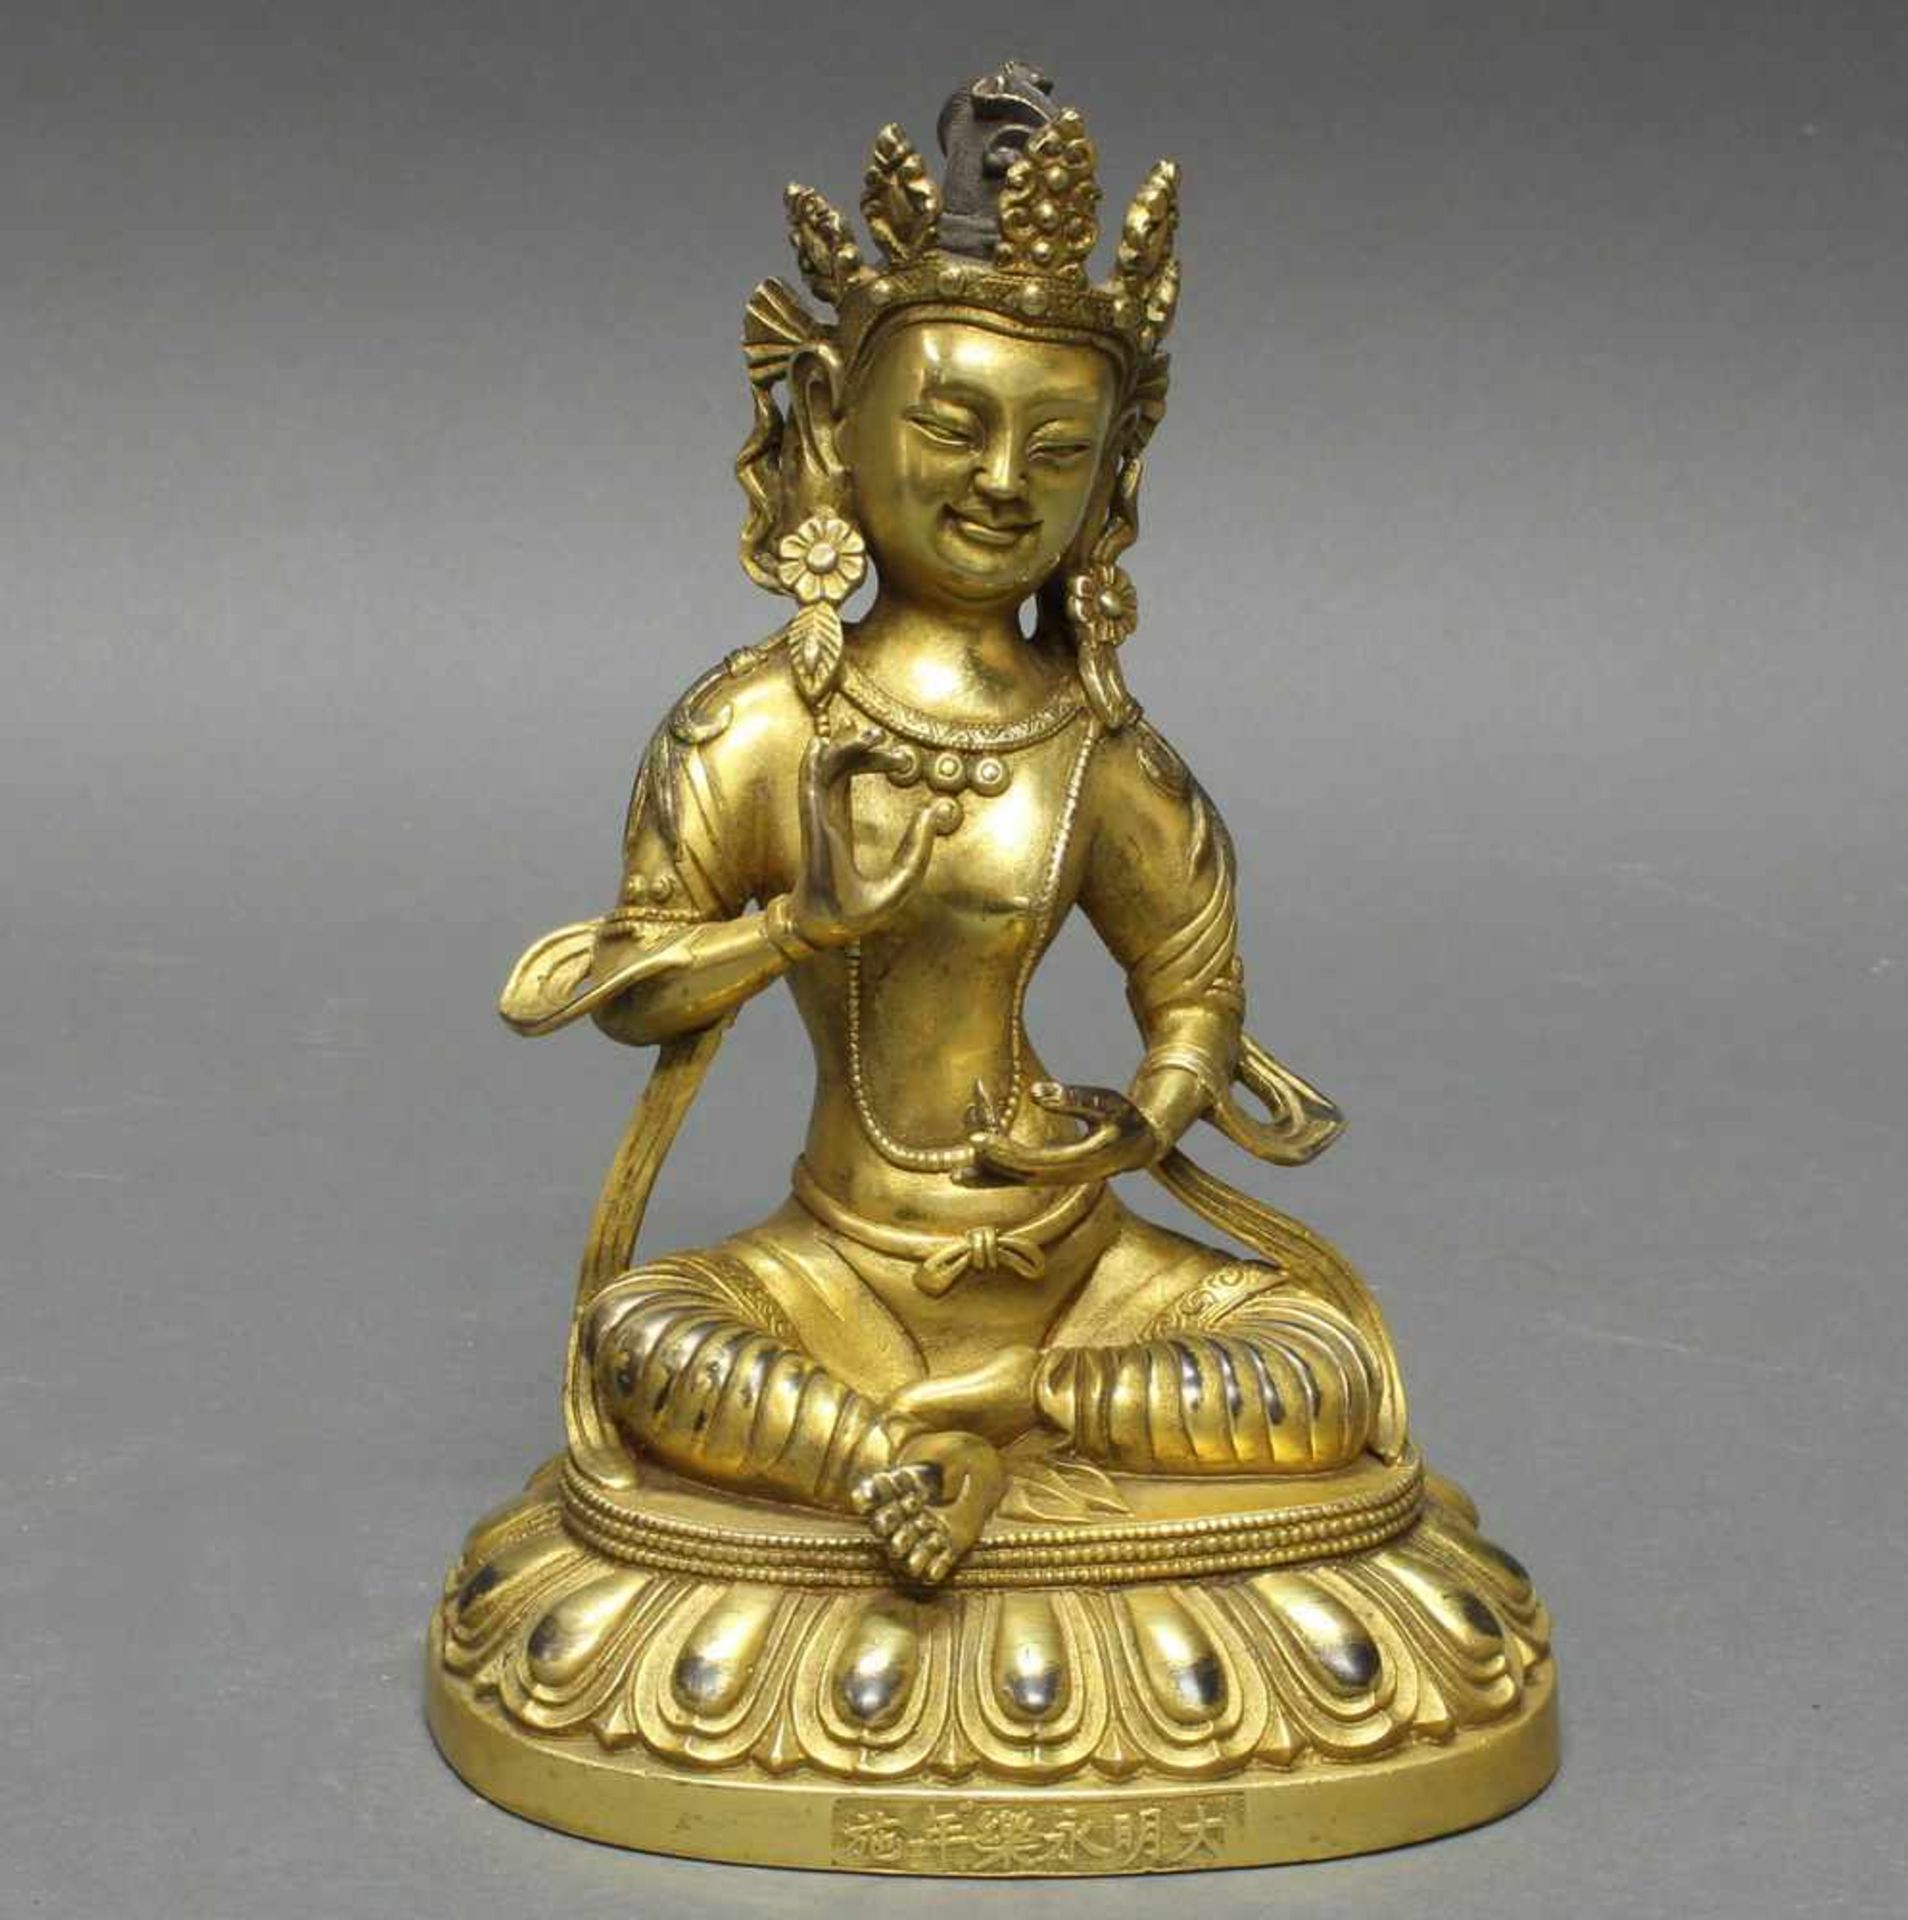 Sitzender Buddha, Asien, neuzeitlich, Bronze vergoldet, Sockel mit Schriftzeichen, 19.5 cm - Bild 2 aus 2